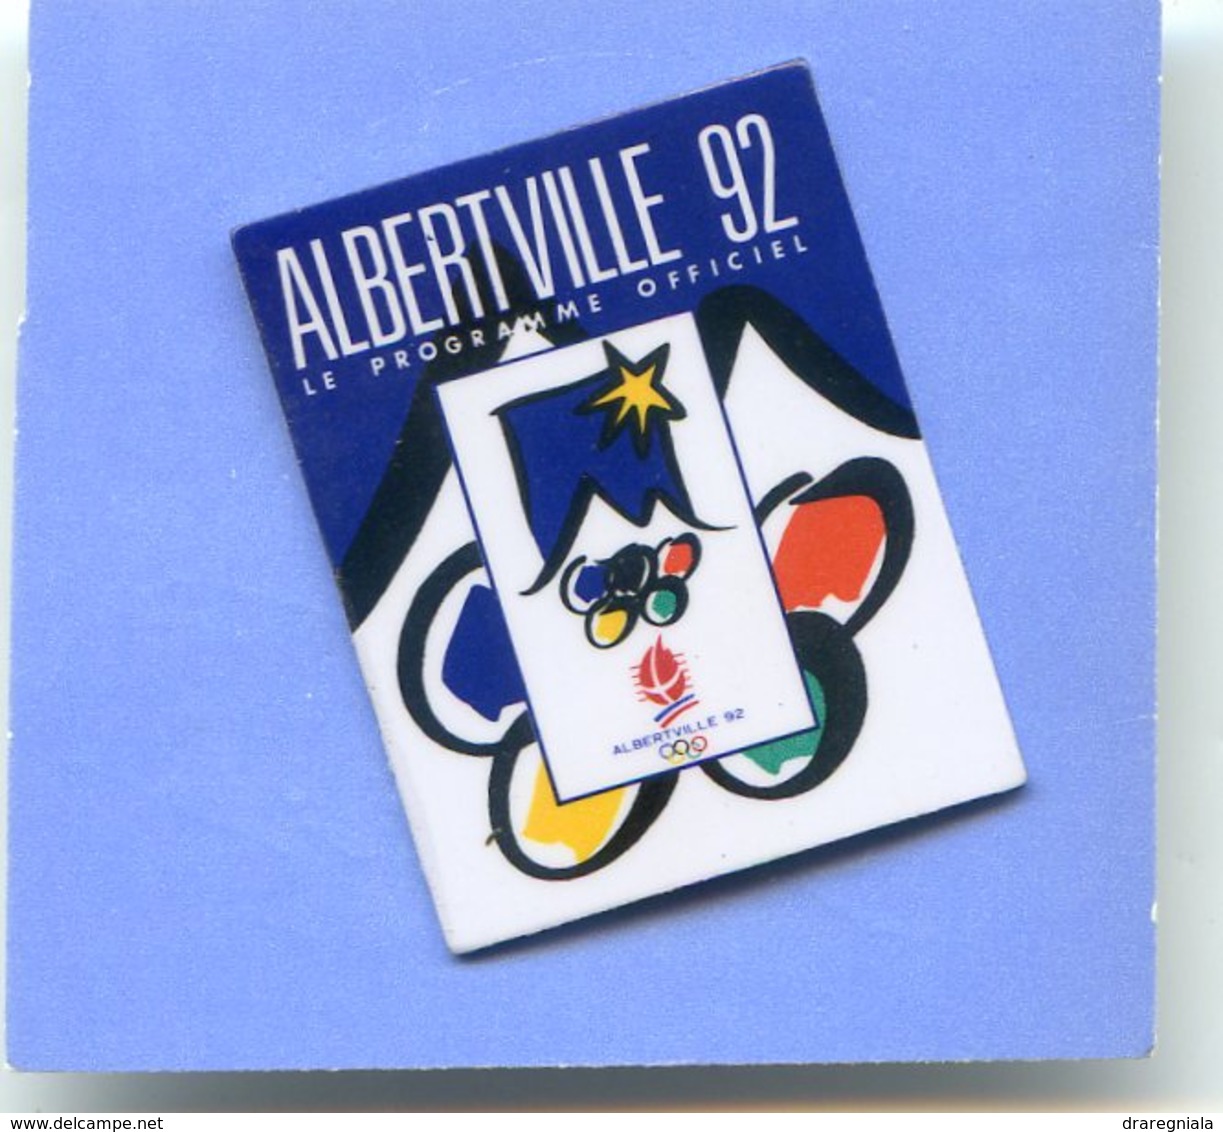 Jeux Olympiques - Albertville 92 - Le Programme Officiel - Olympische Spelen